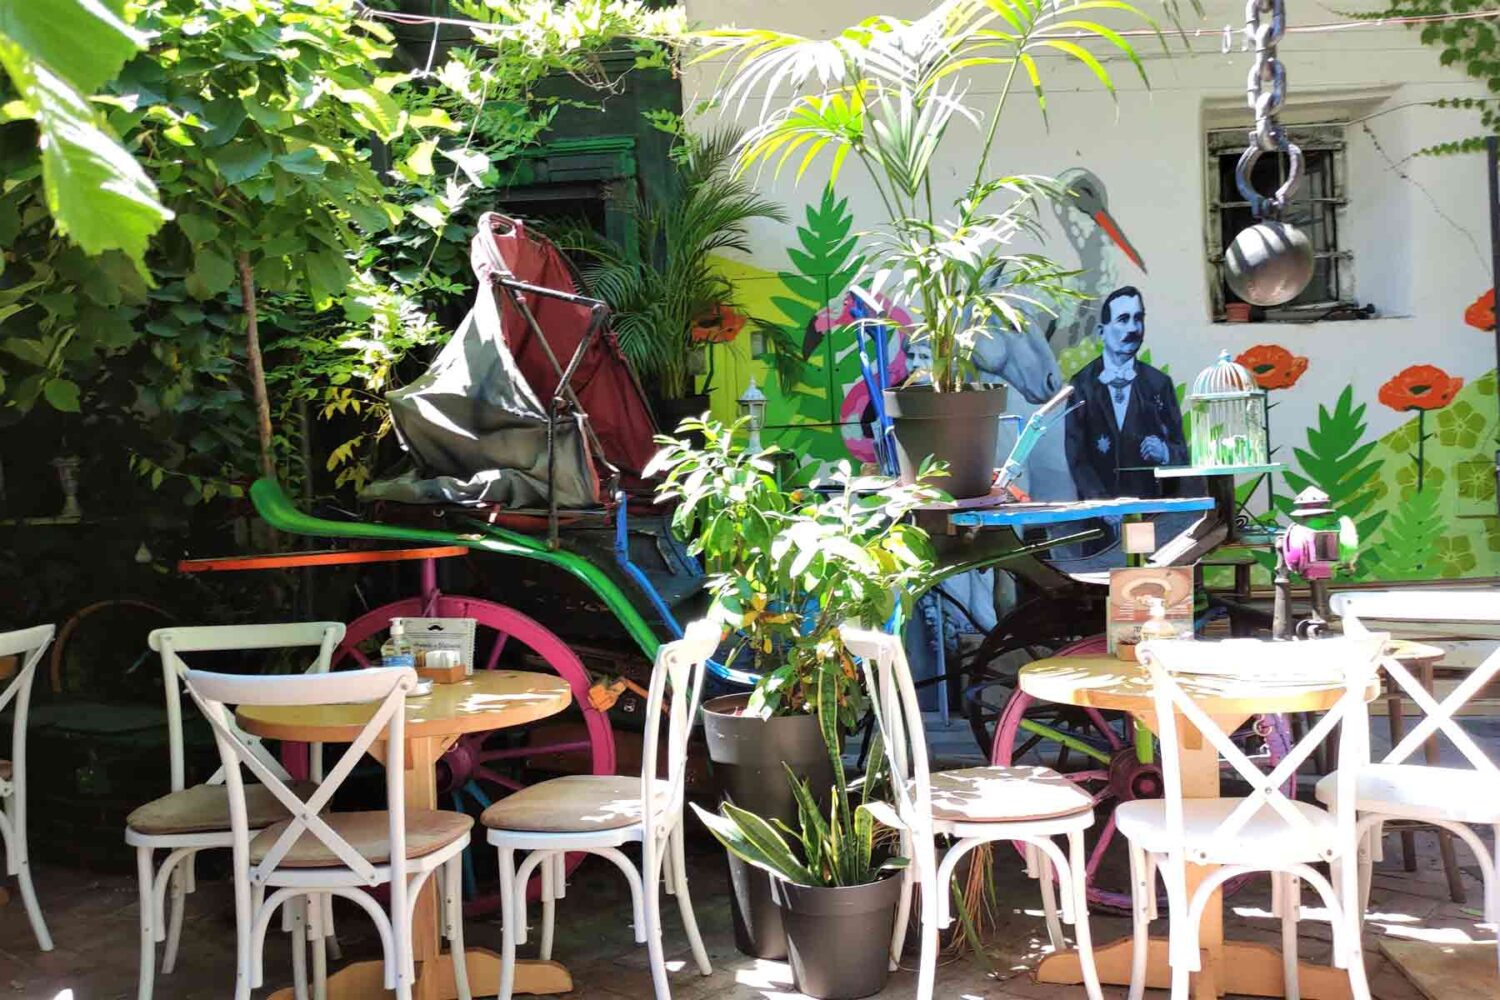 Blaznavac je jedan od najlepših kafe barova u Beogradu